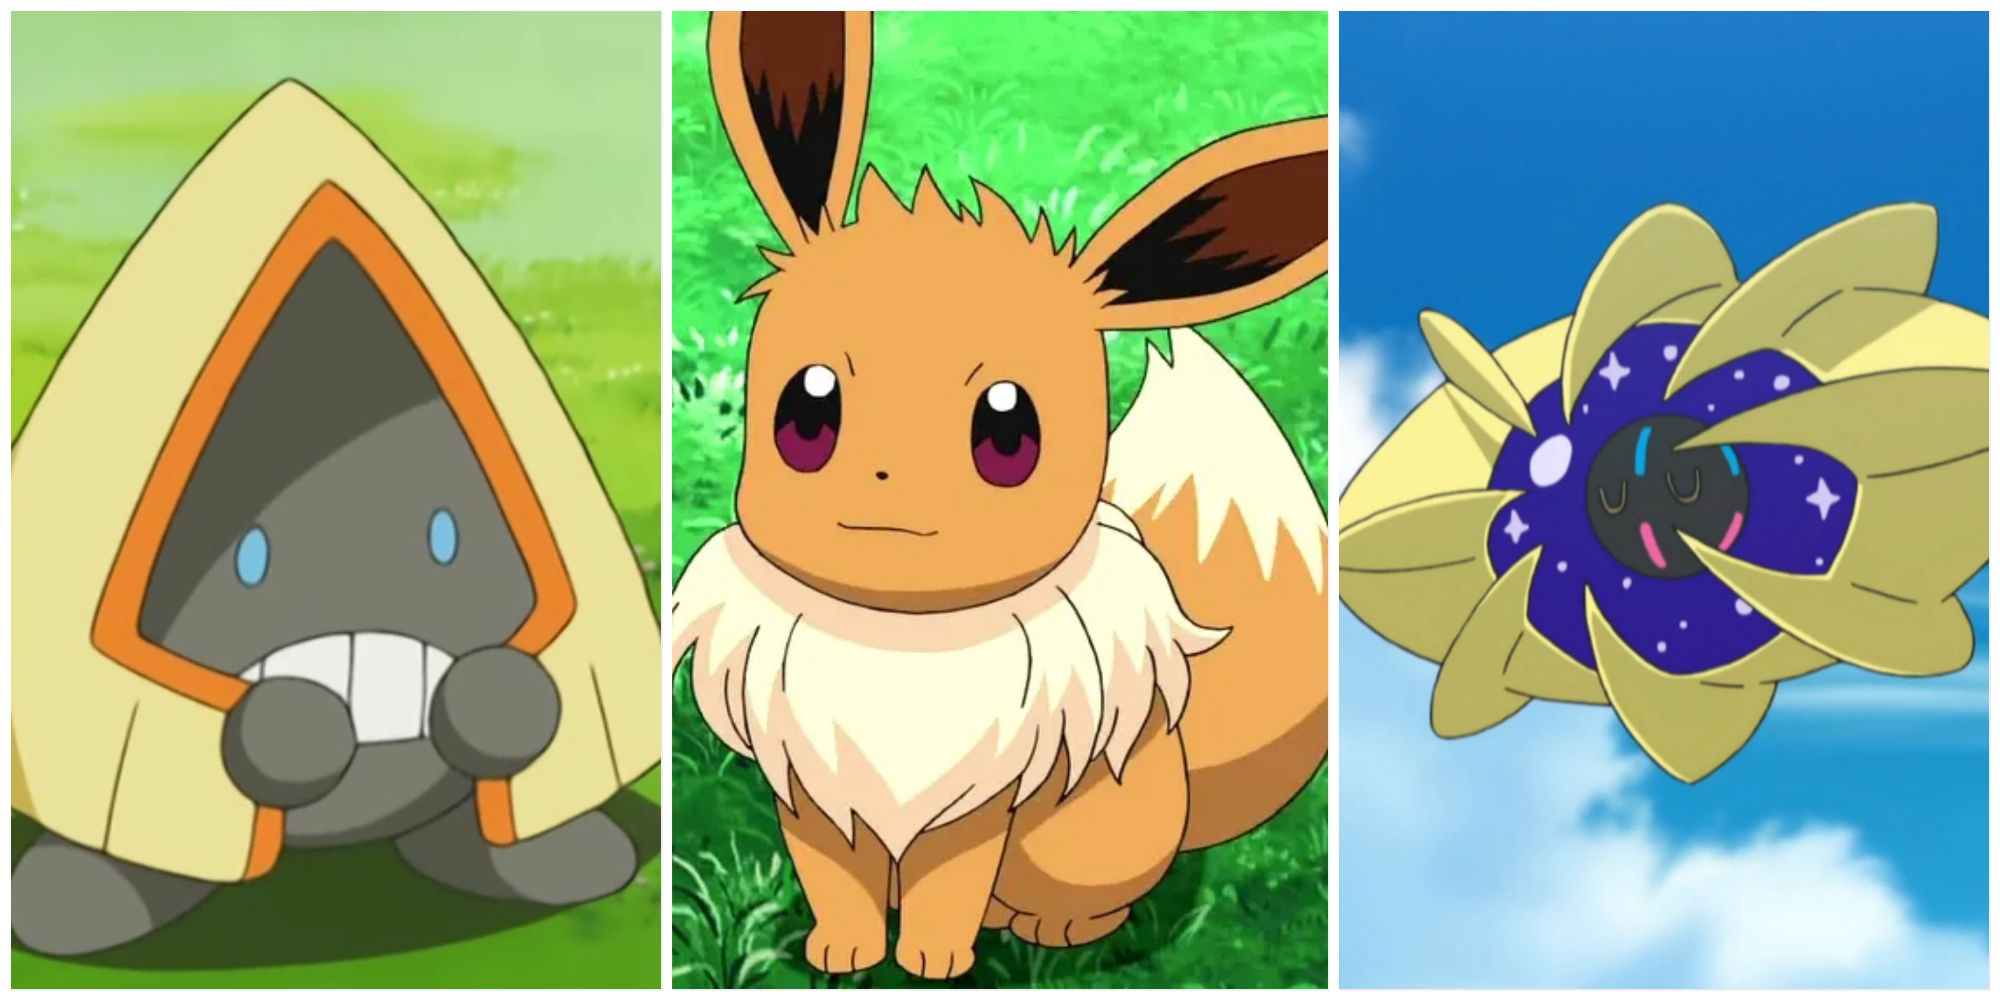 Split image screenshots of Snorunt, Eevee and Cosmoem in the Pokemon anime.